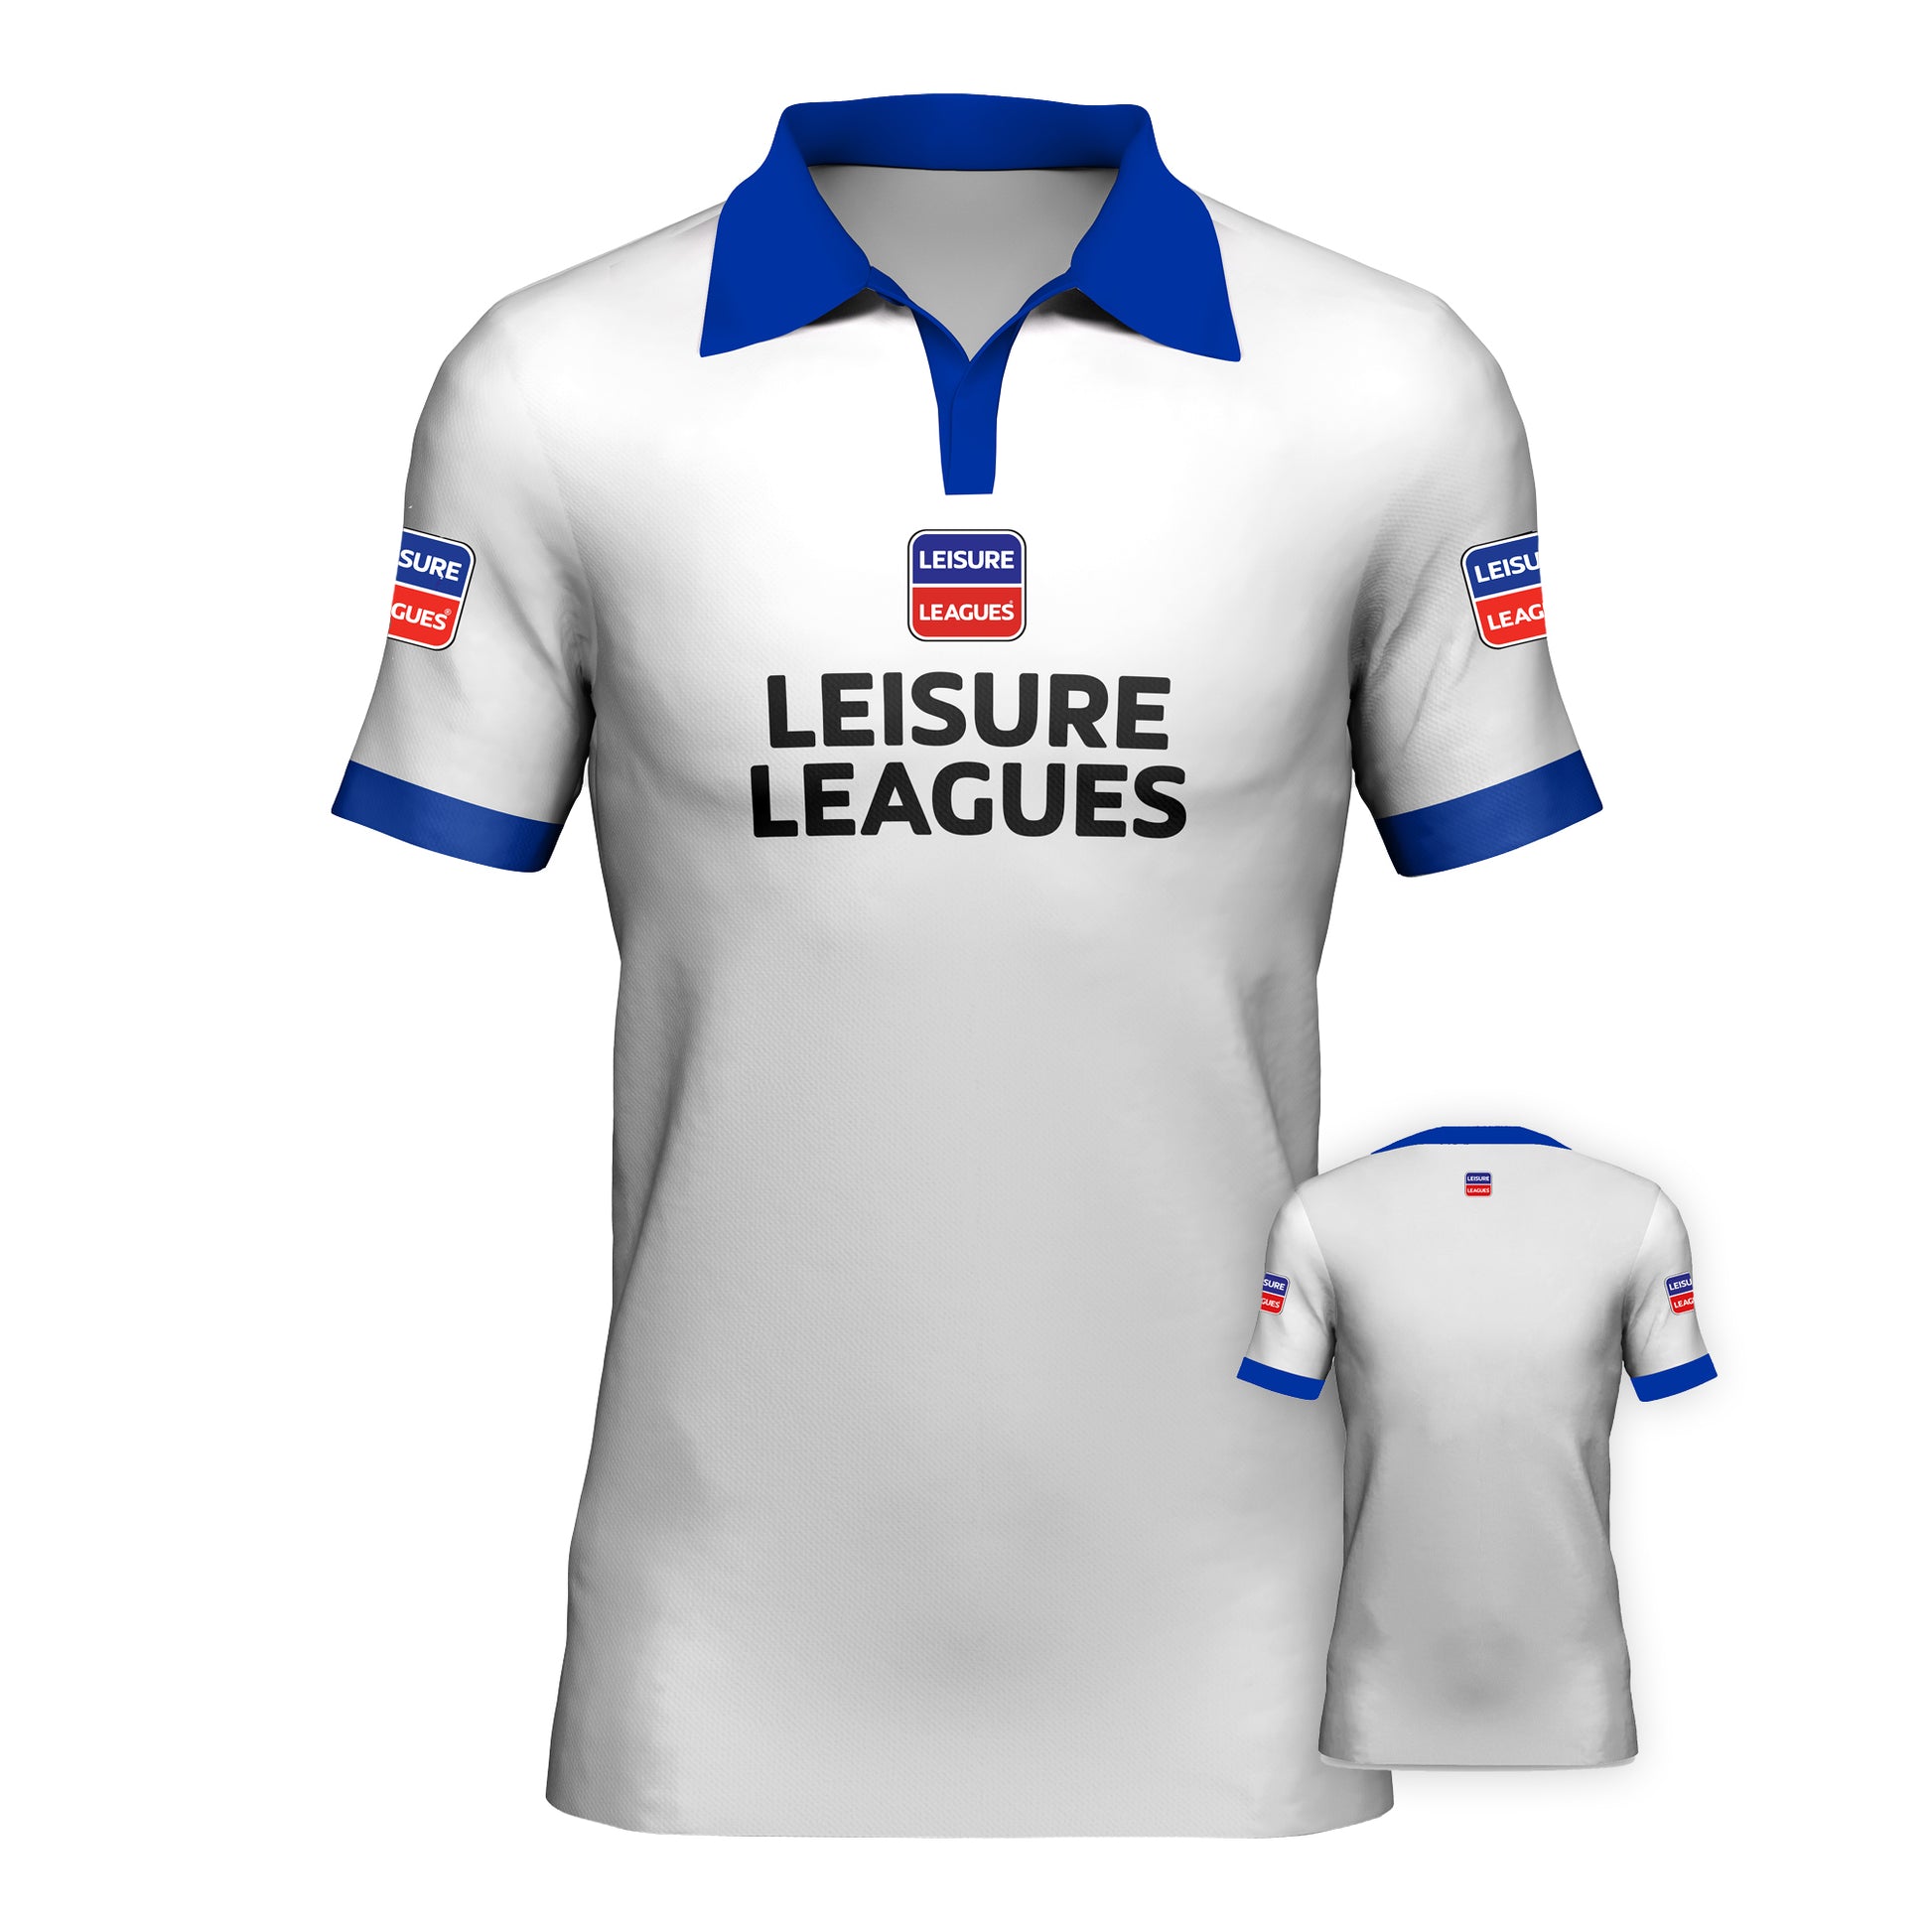 Football Shirt Leisure Leagues Kit Team Tshirt Azzurri White Collar